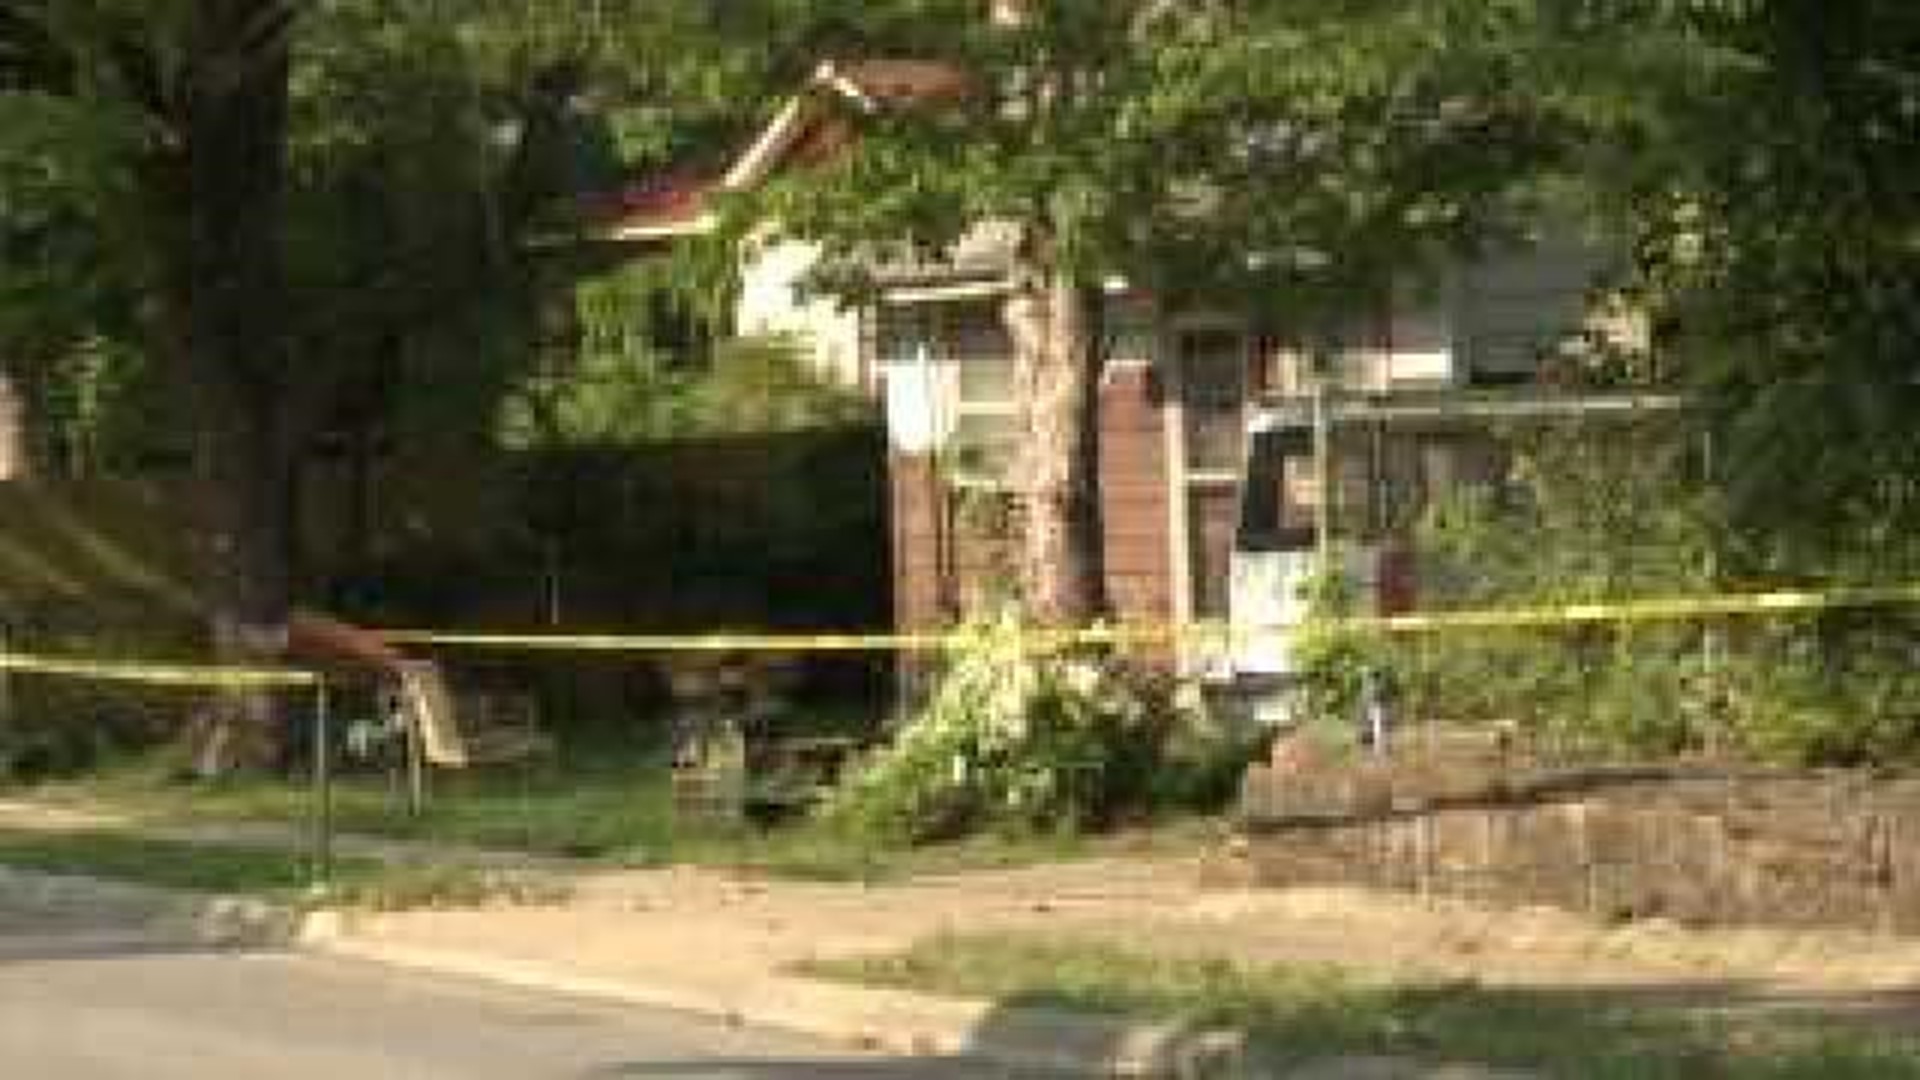 Woman Dead In Fayetteville Stabbing